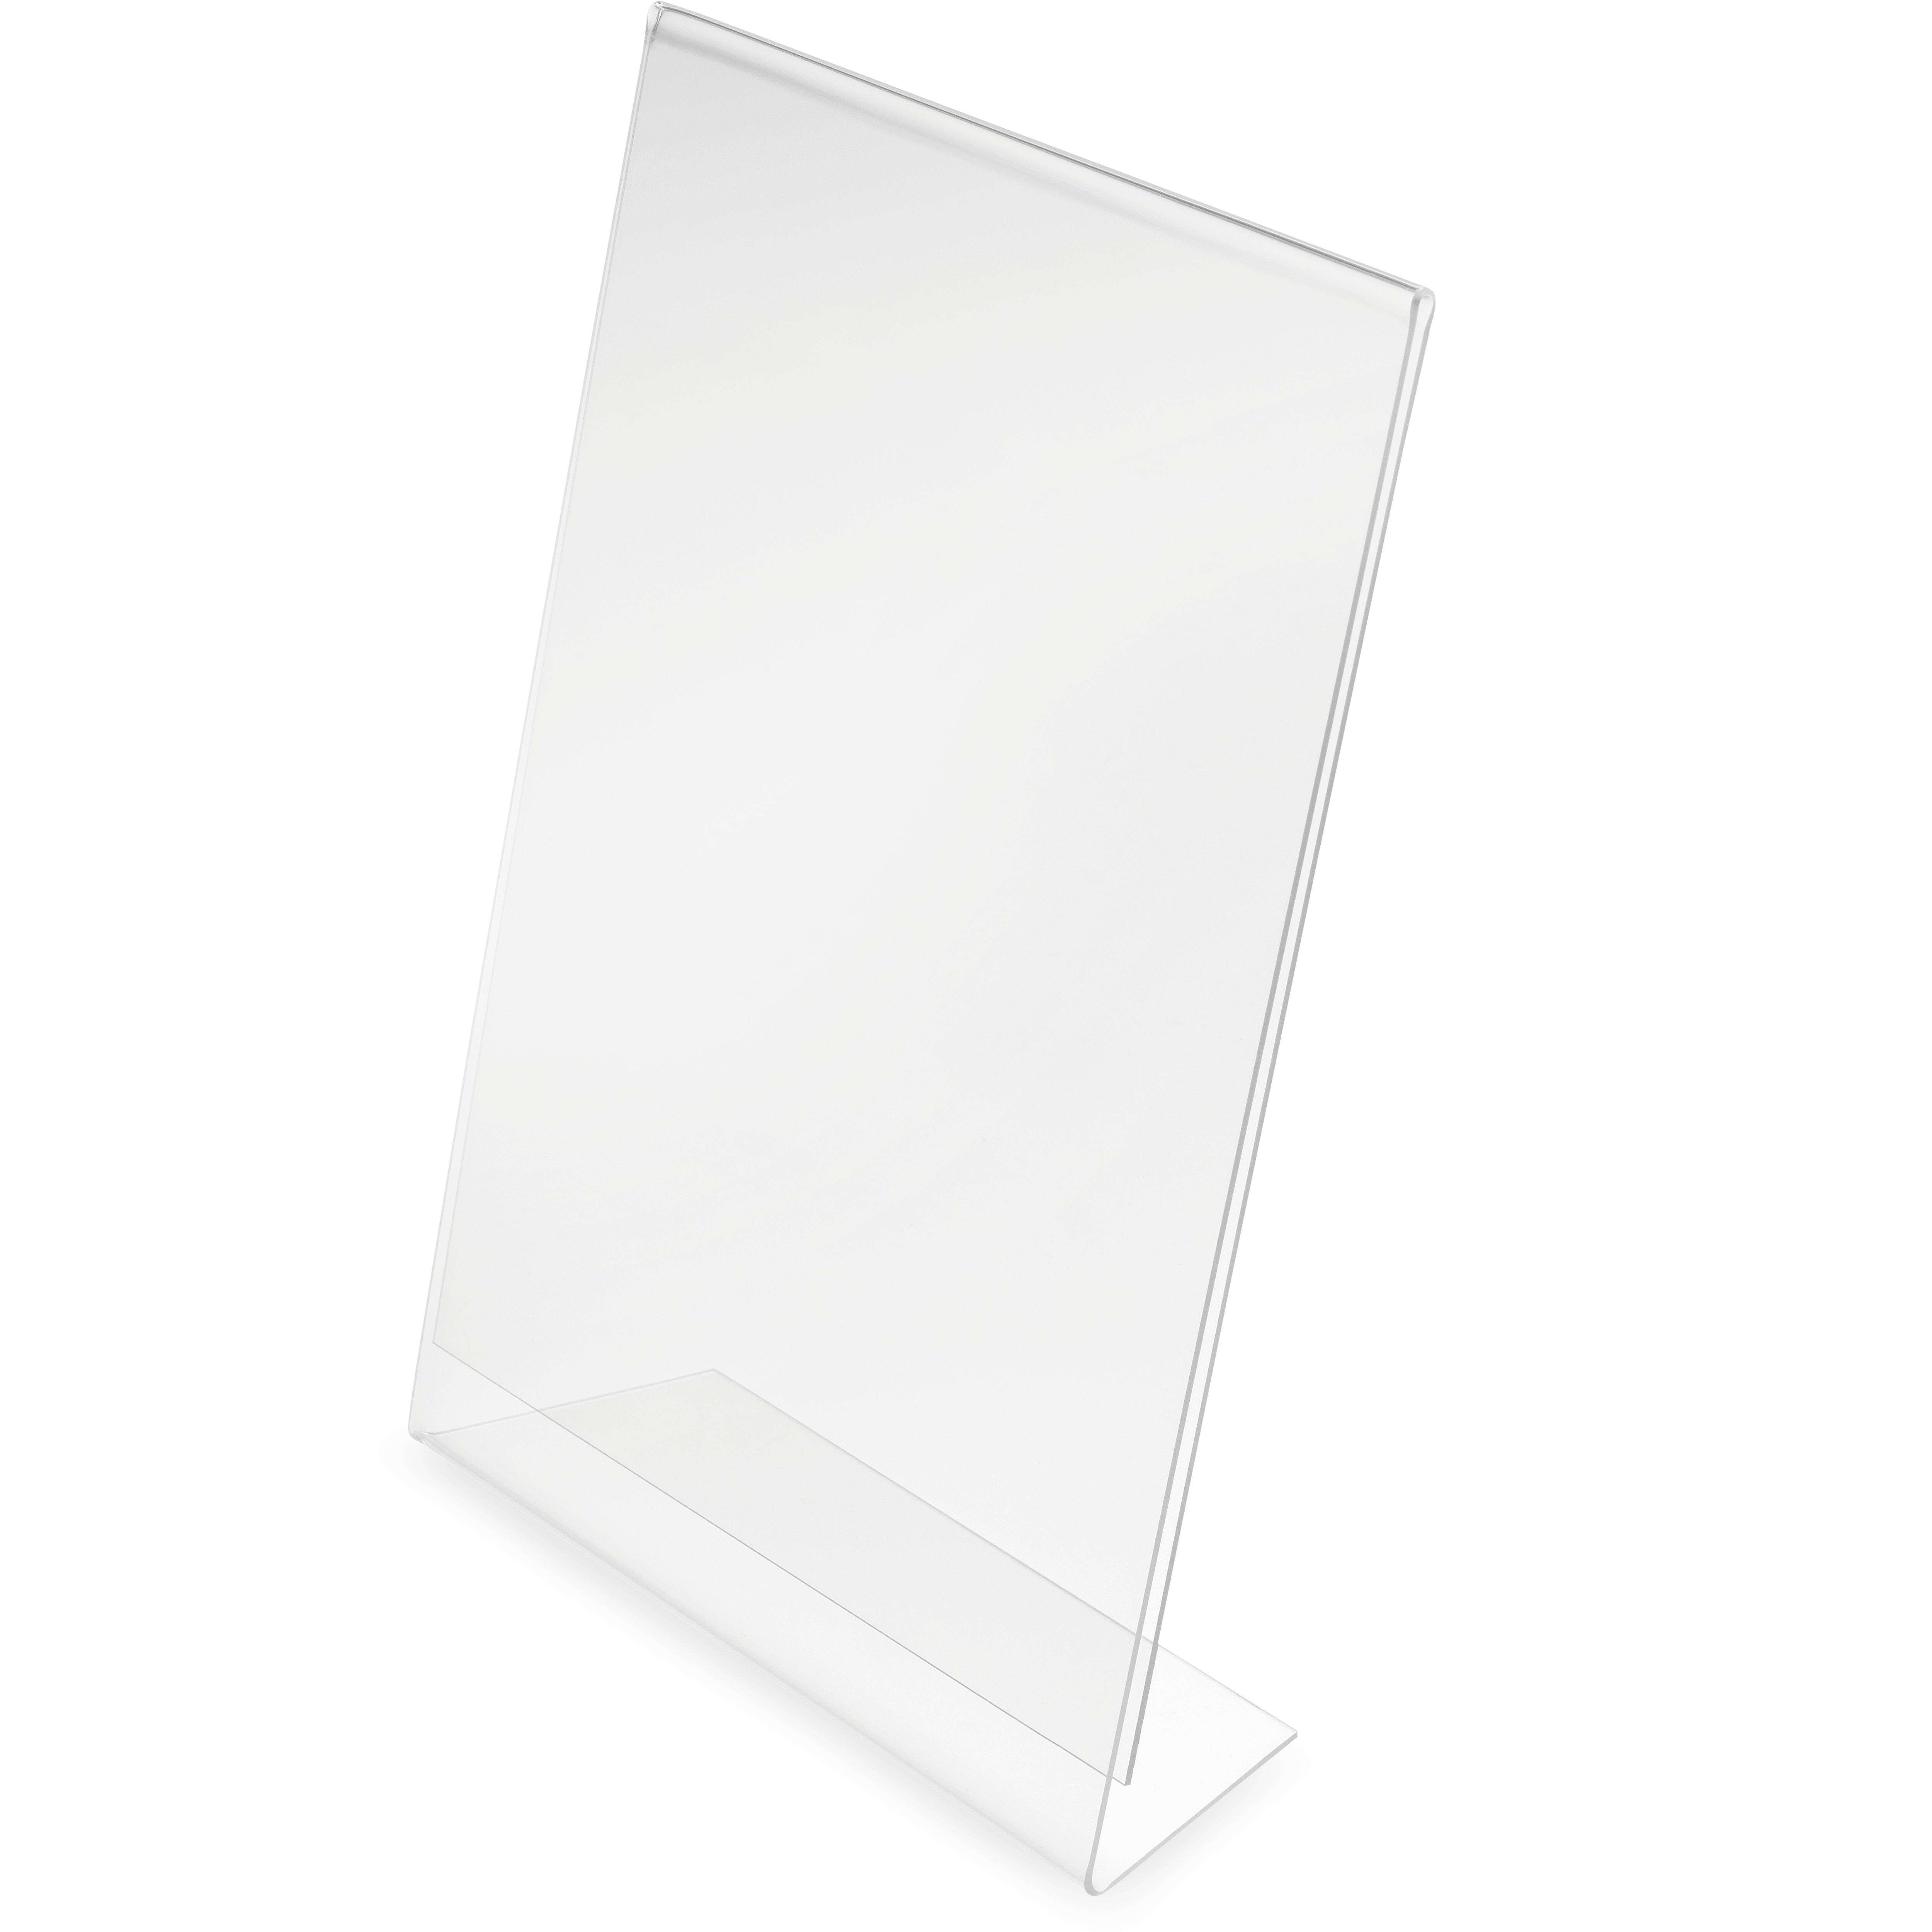 DEFLECTO Présentoir Table Acrylique A5 47501 biais, vertical biais, vertical